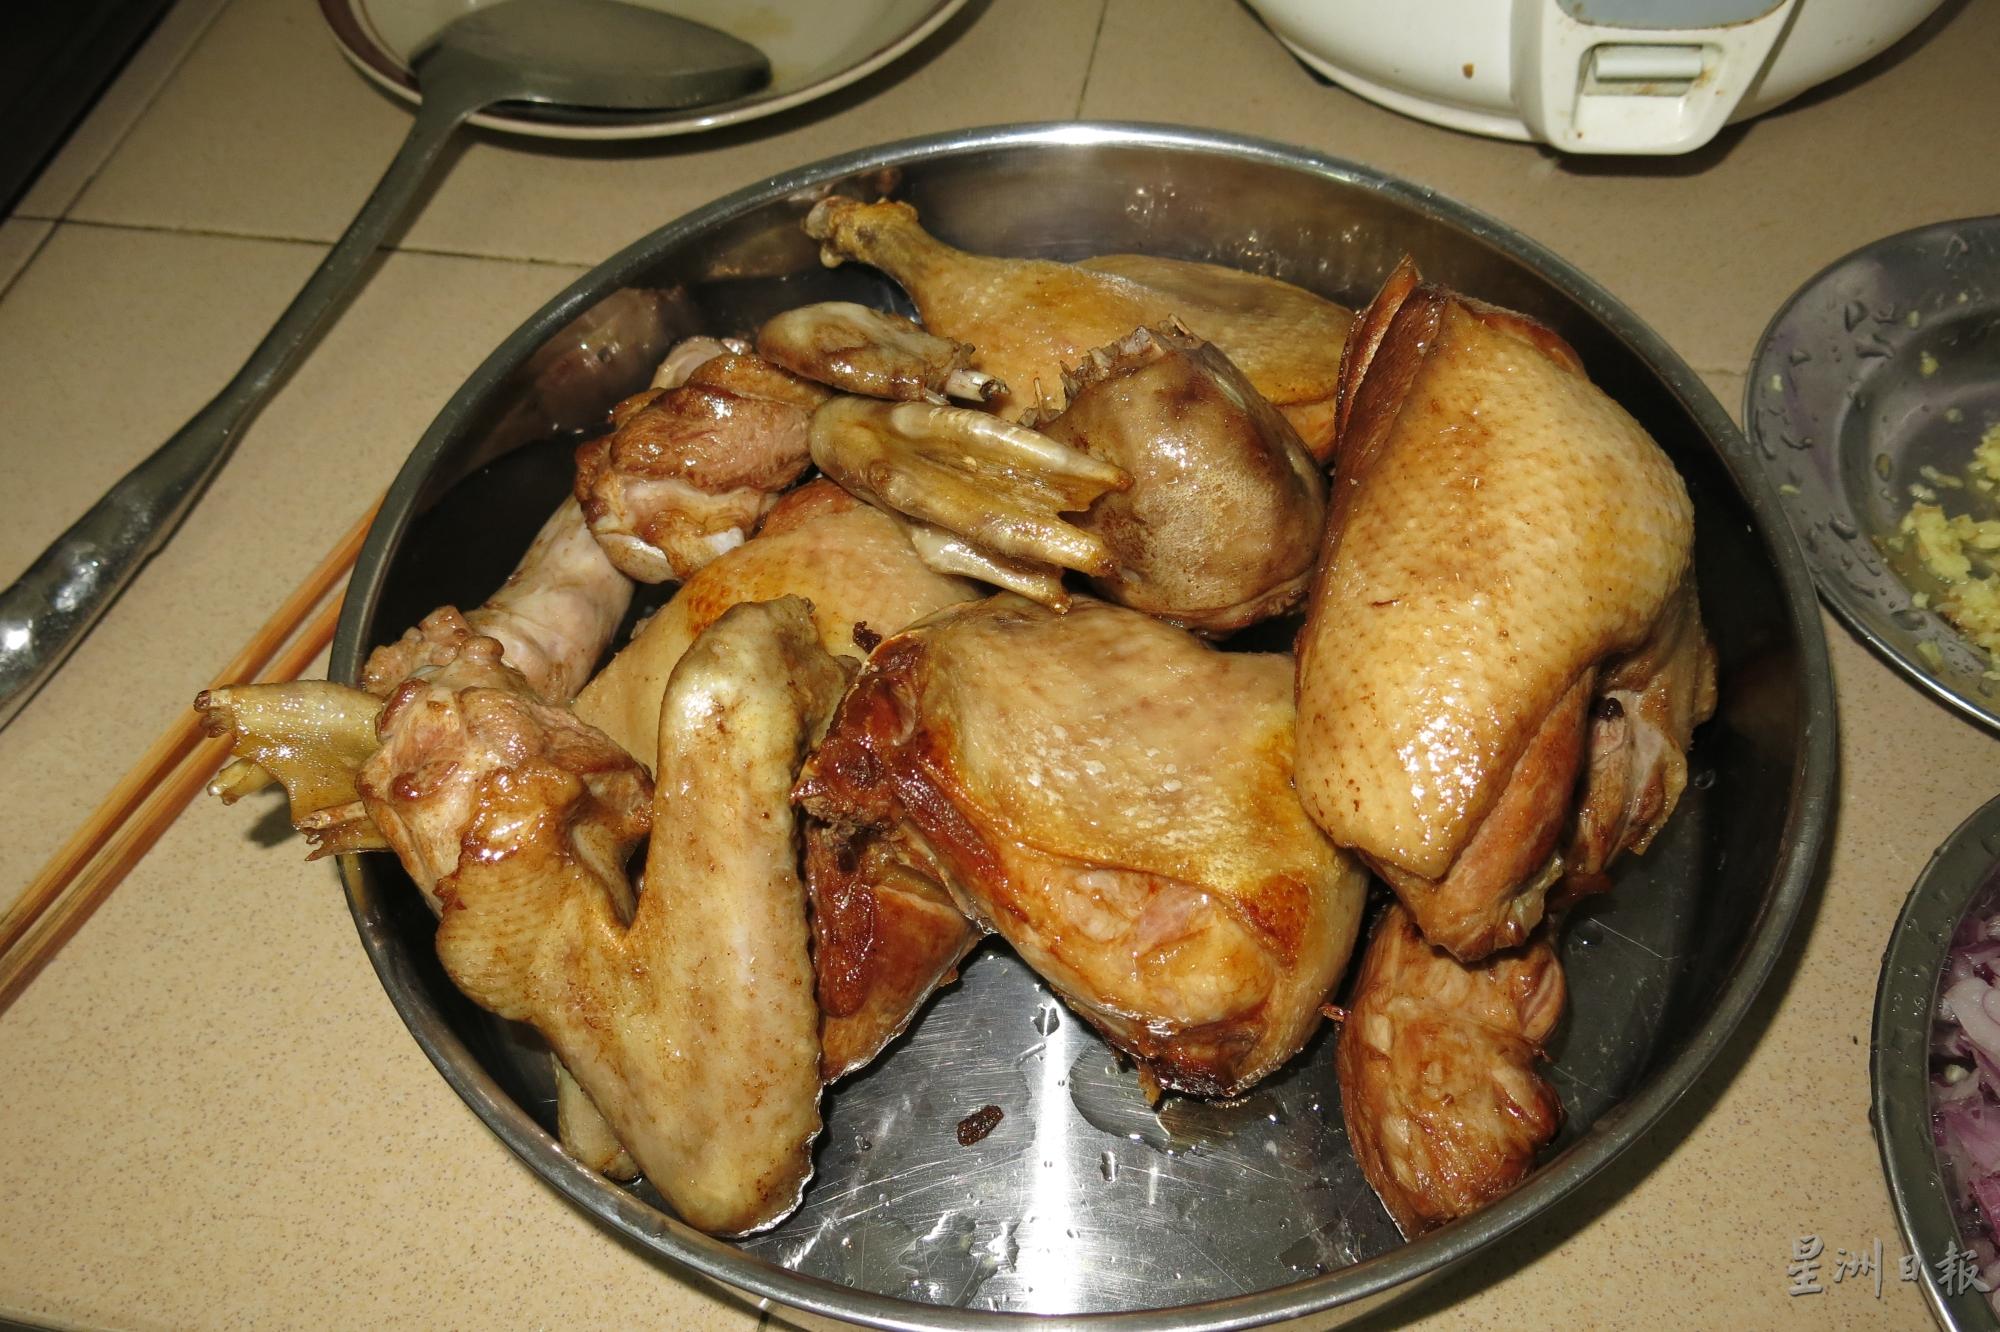 炸至微黄的鸭肉飘出一些焦香味。

